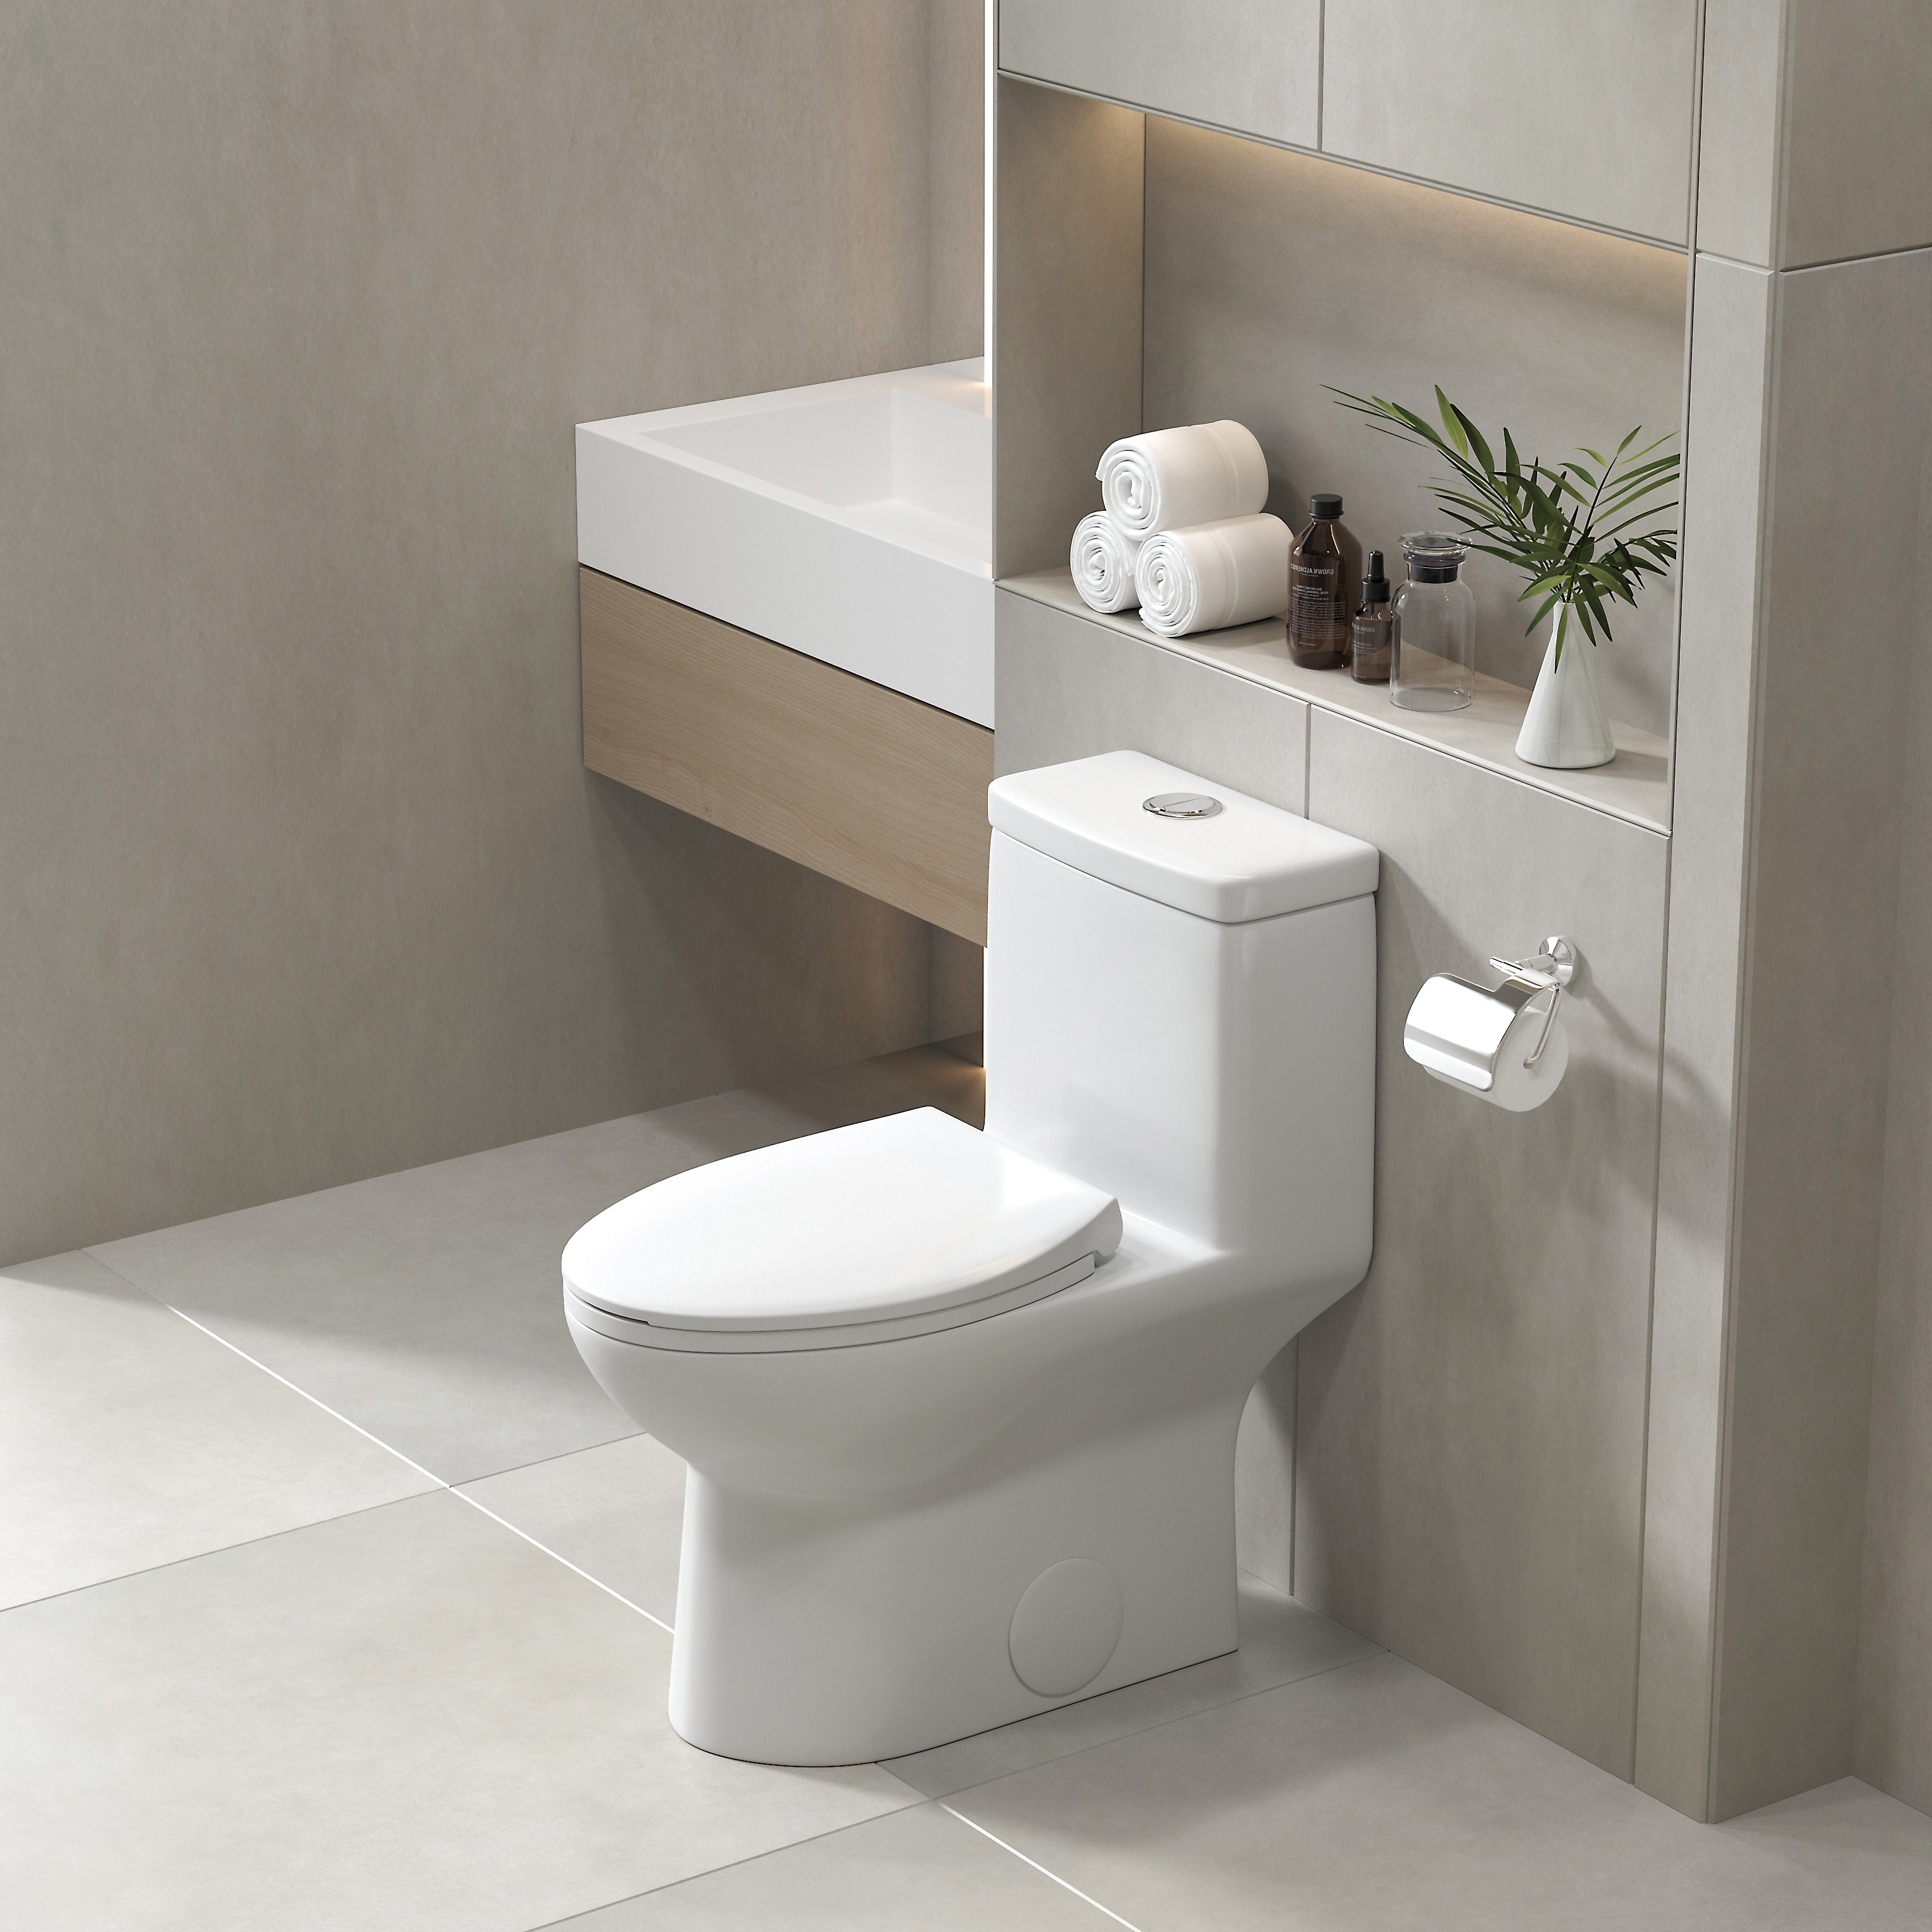 https://assets.wfcdn.com/im/16849776/compr-r85/1657/165773421/poseidon-128-gpf-elongated-comfort-height-floor-mounted-one-piece-toilet.jpg